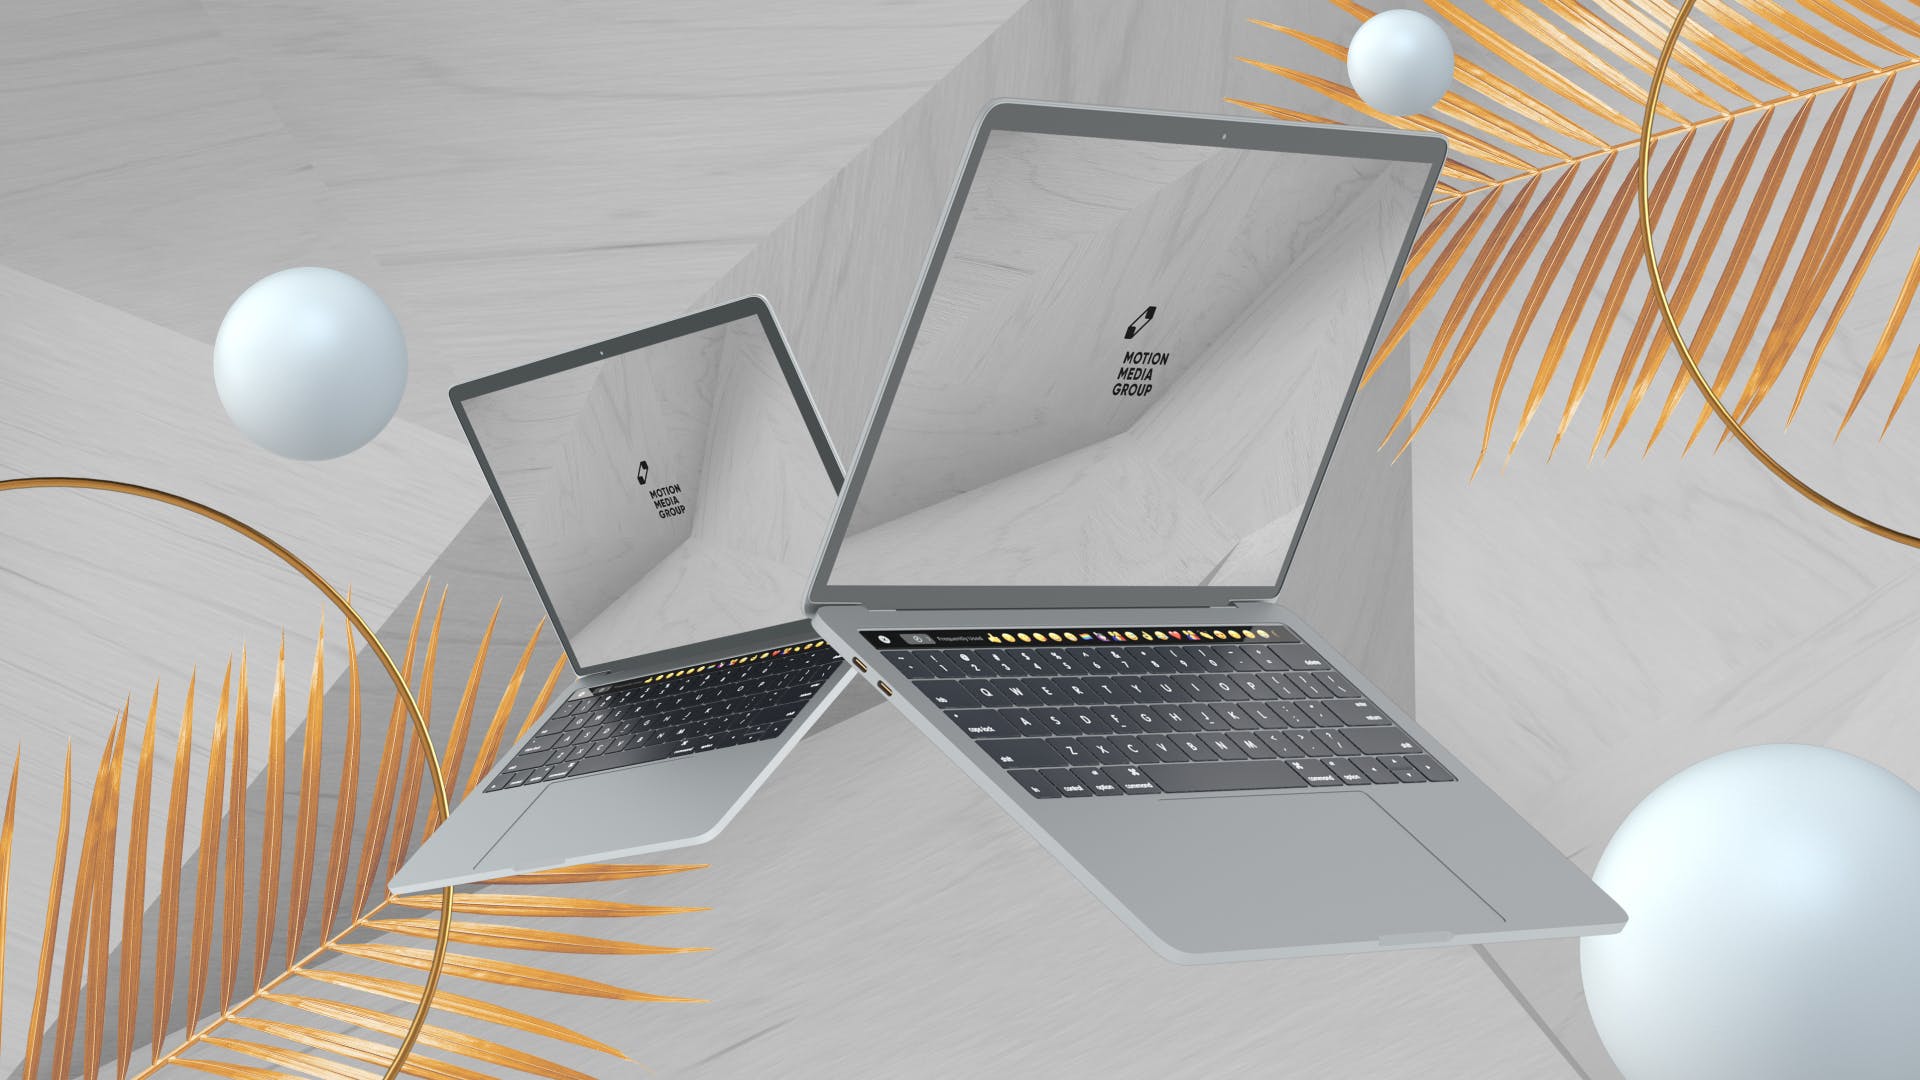 优雅时尚风格3D立体风格笔记本电脑屏幕预览蚂蚁素材精选样机 10 Light Laptop Mockups插图(7)